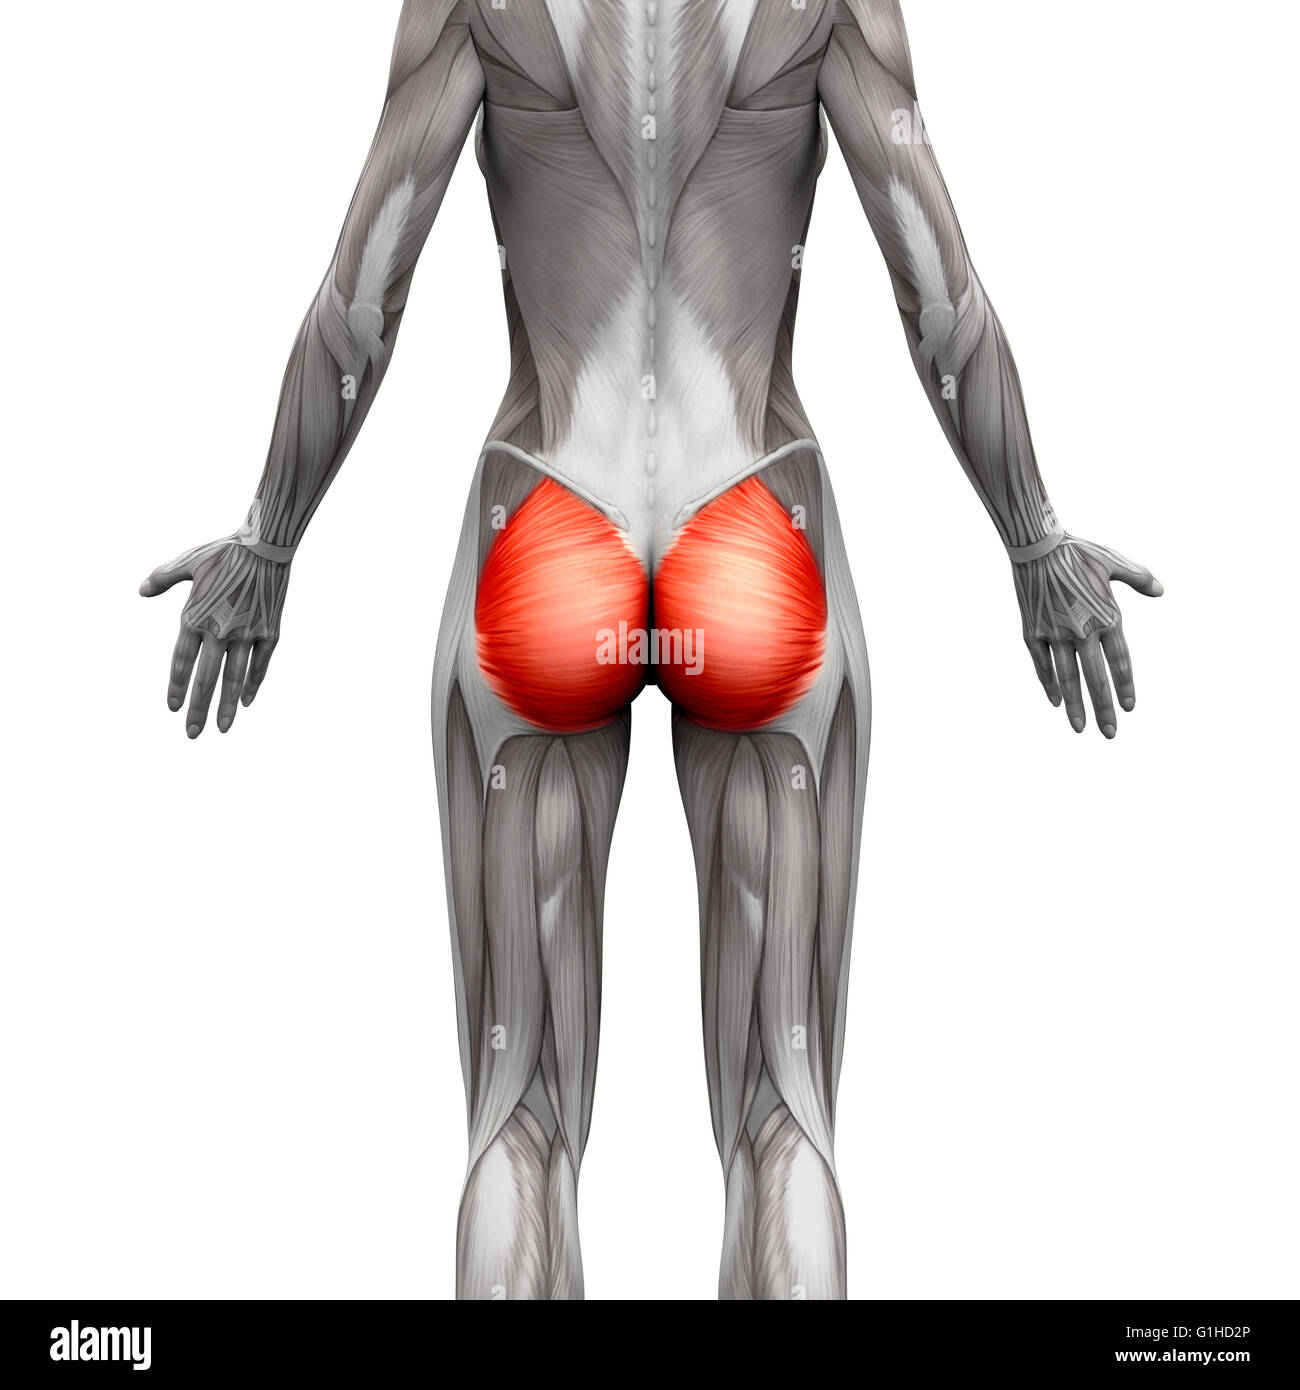 Gesäßmuskulatur / Gluteus Maximus - Anatomie Muskeln isoliert auf weiss - 3D-Illustration Stockfoto